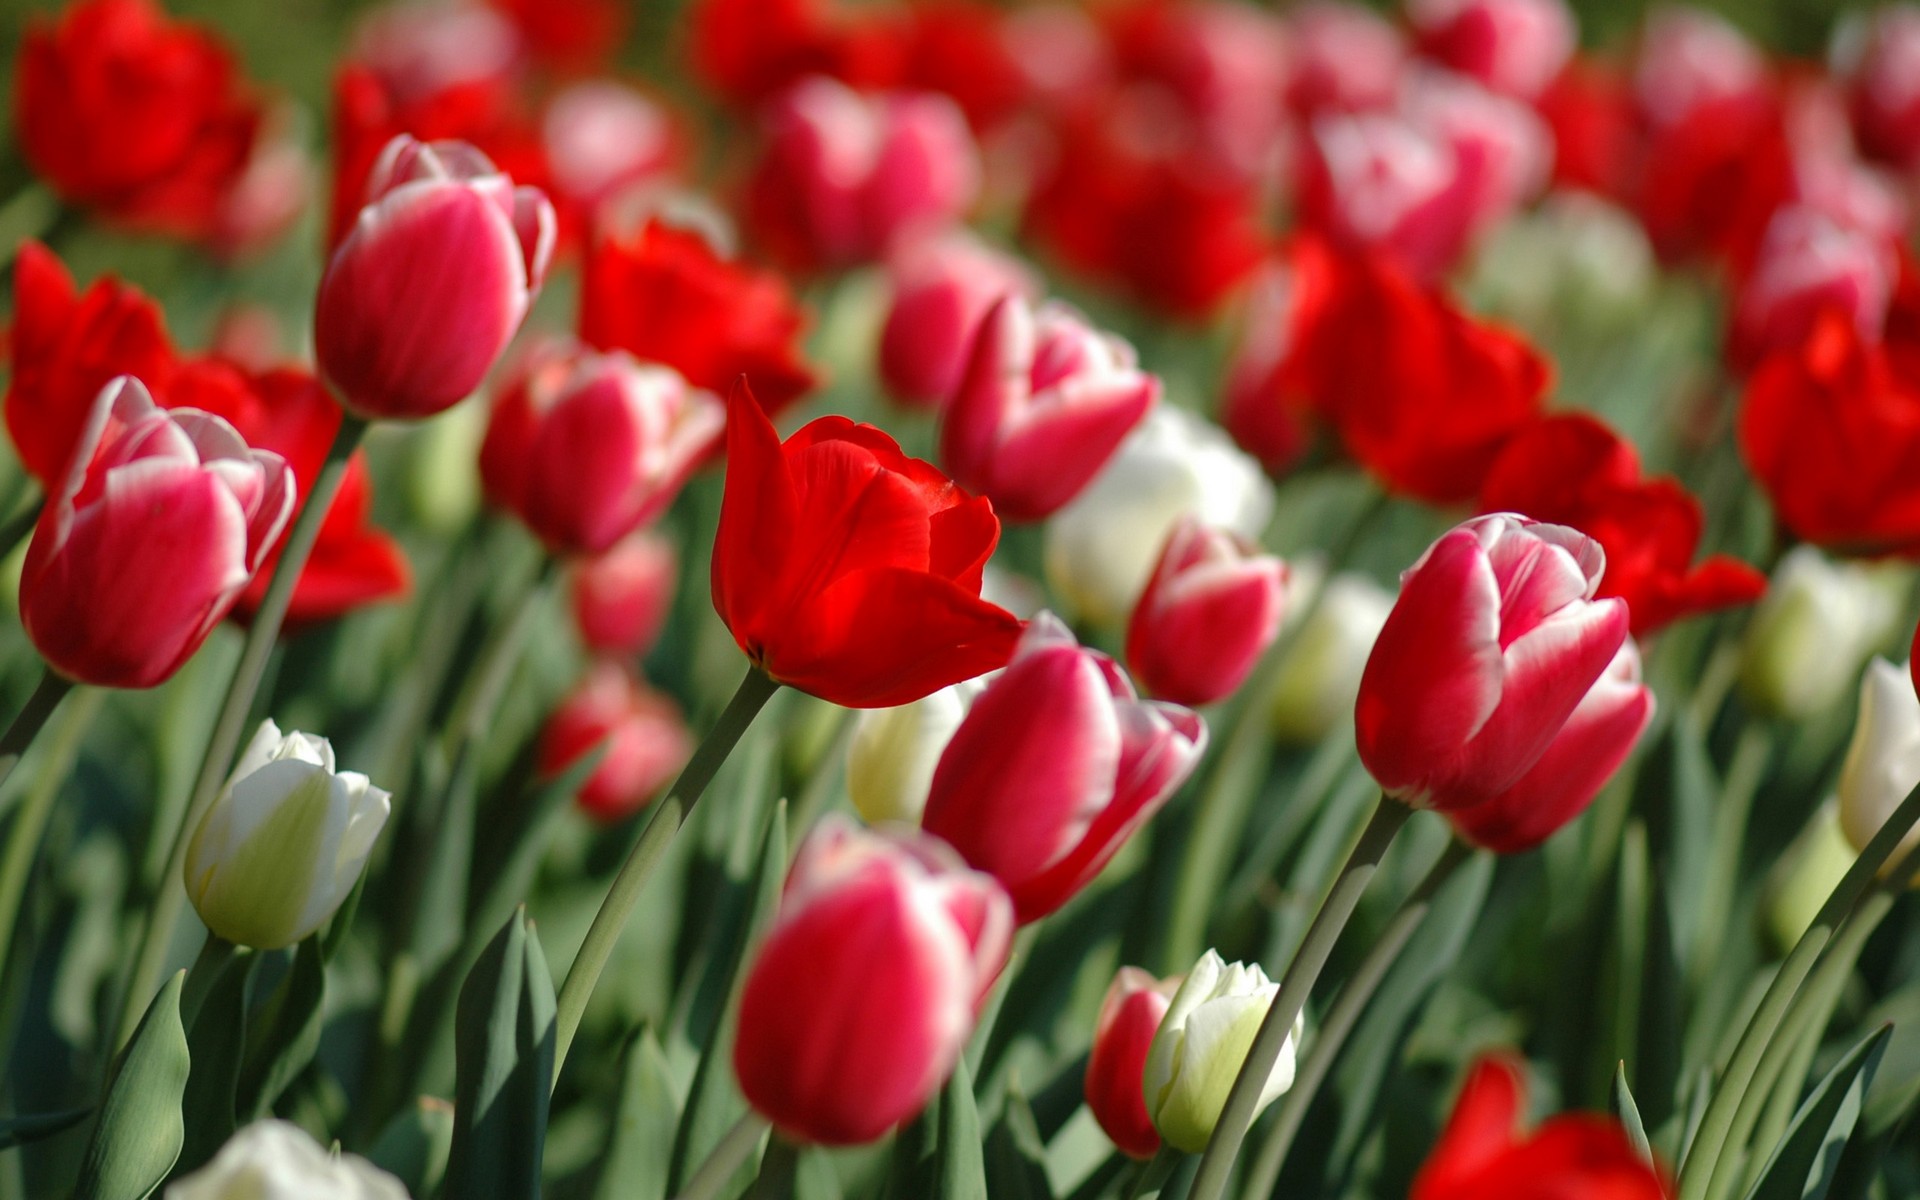 3849 ورود رائعة الجمال - صور زهور ساحرة خلابة بالوانها سناء بدر